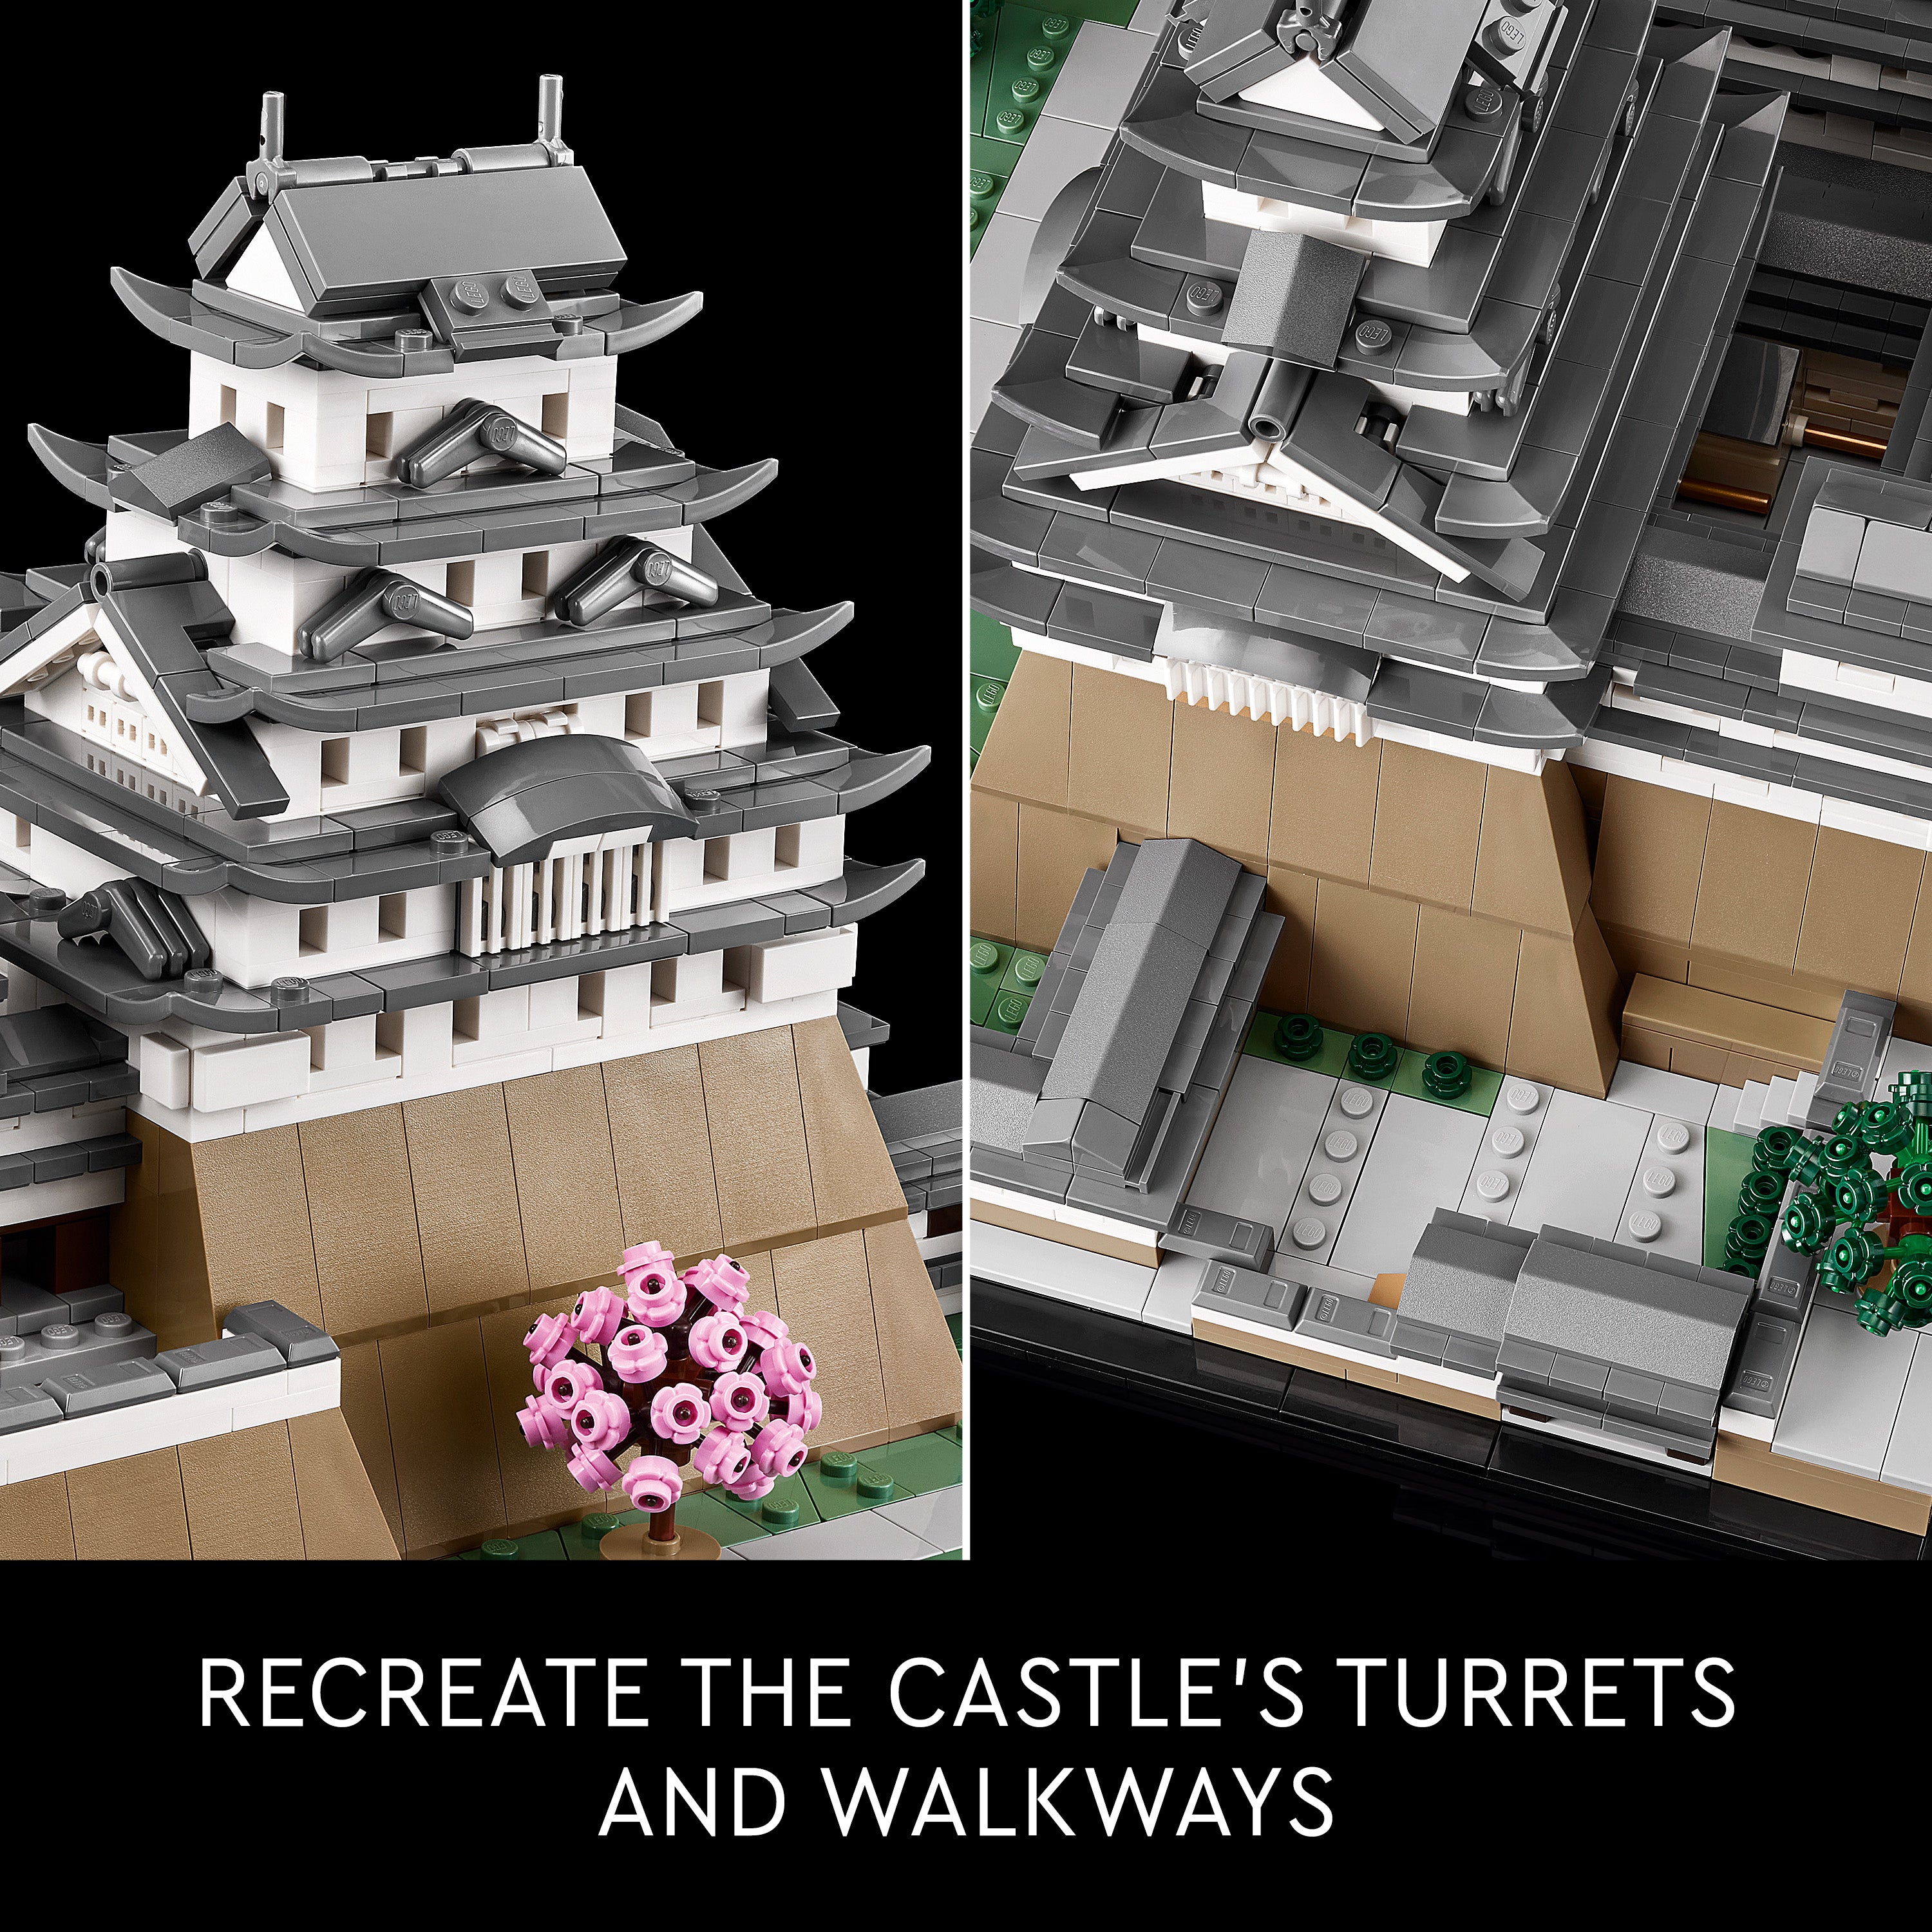 Lego 21060 Himeji Castle